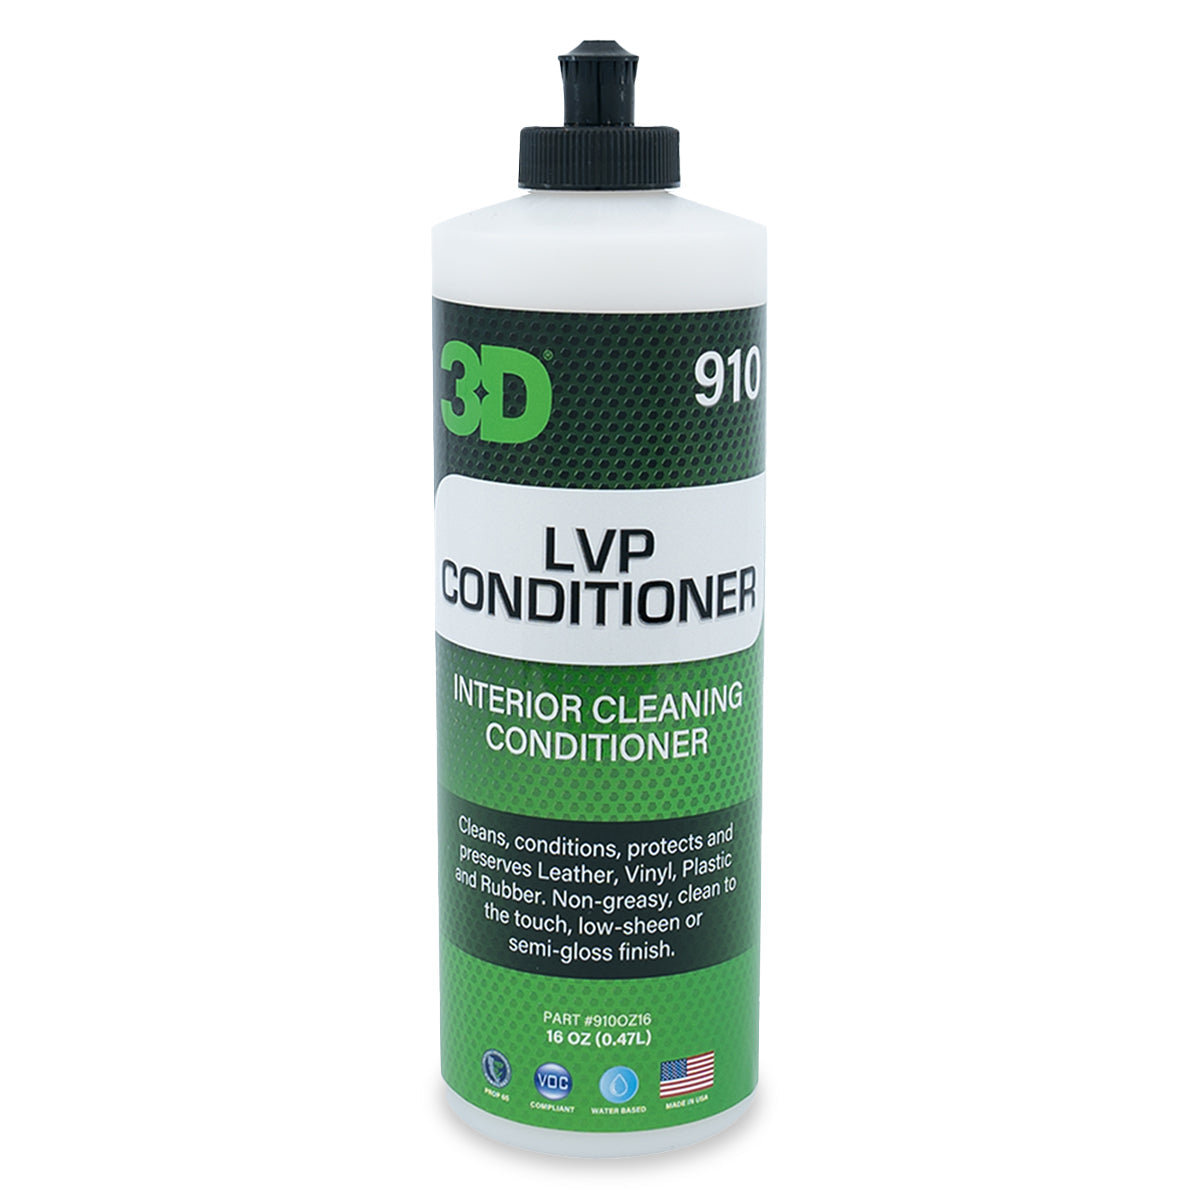 LVP Conditioner - Pressure Equipment Sales LLC